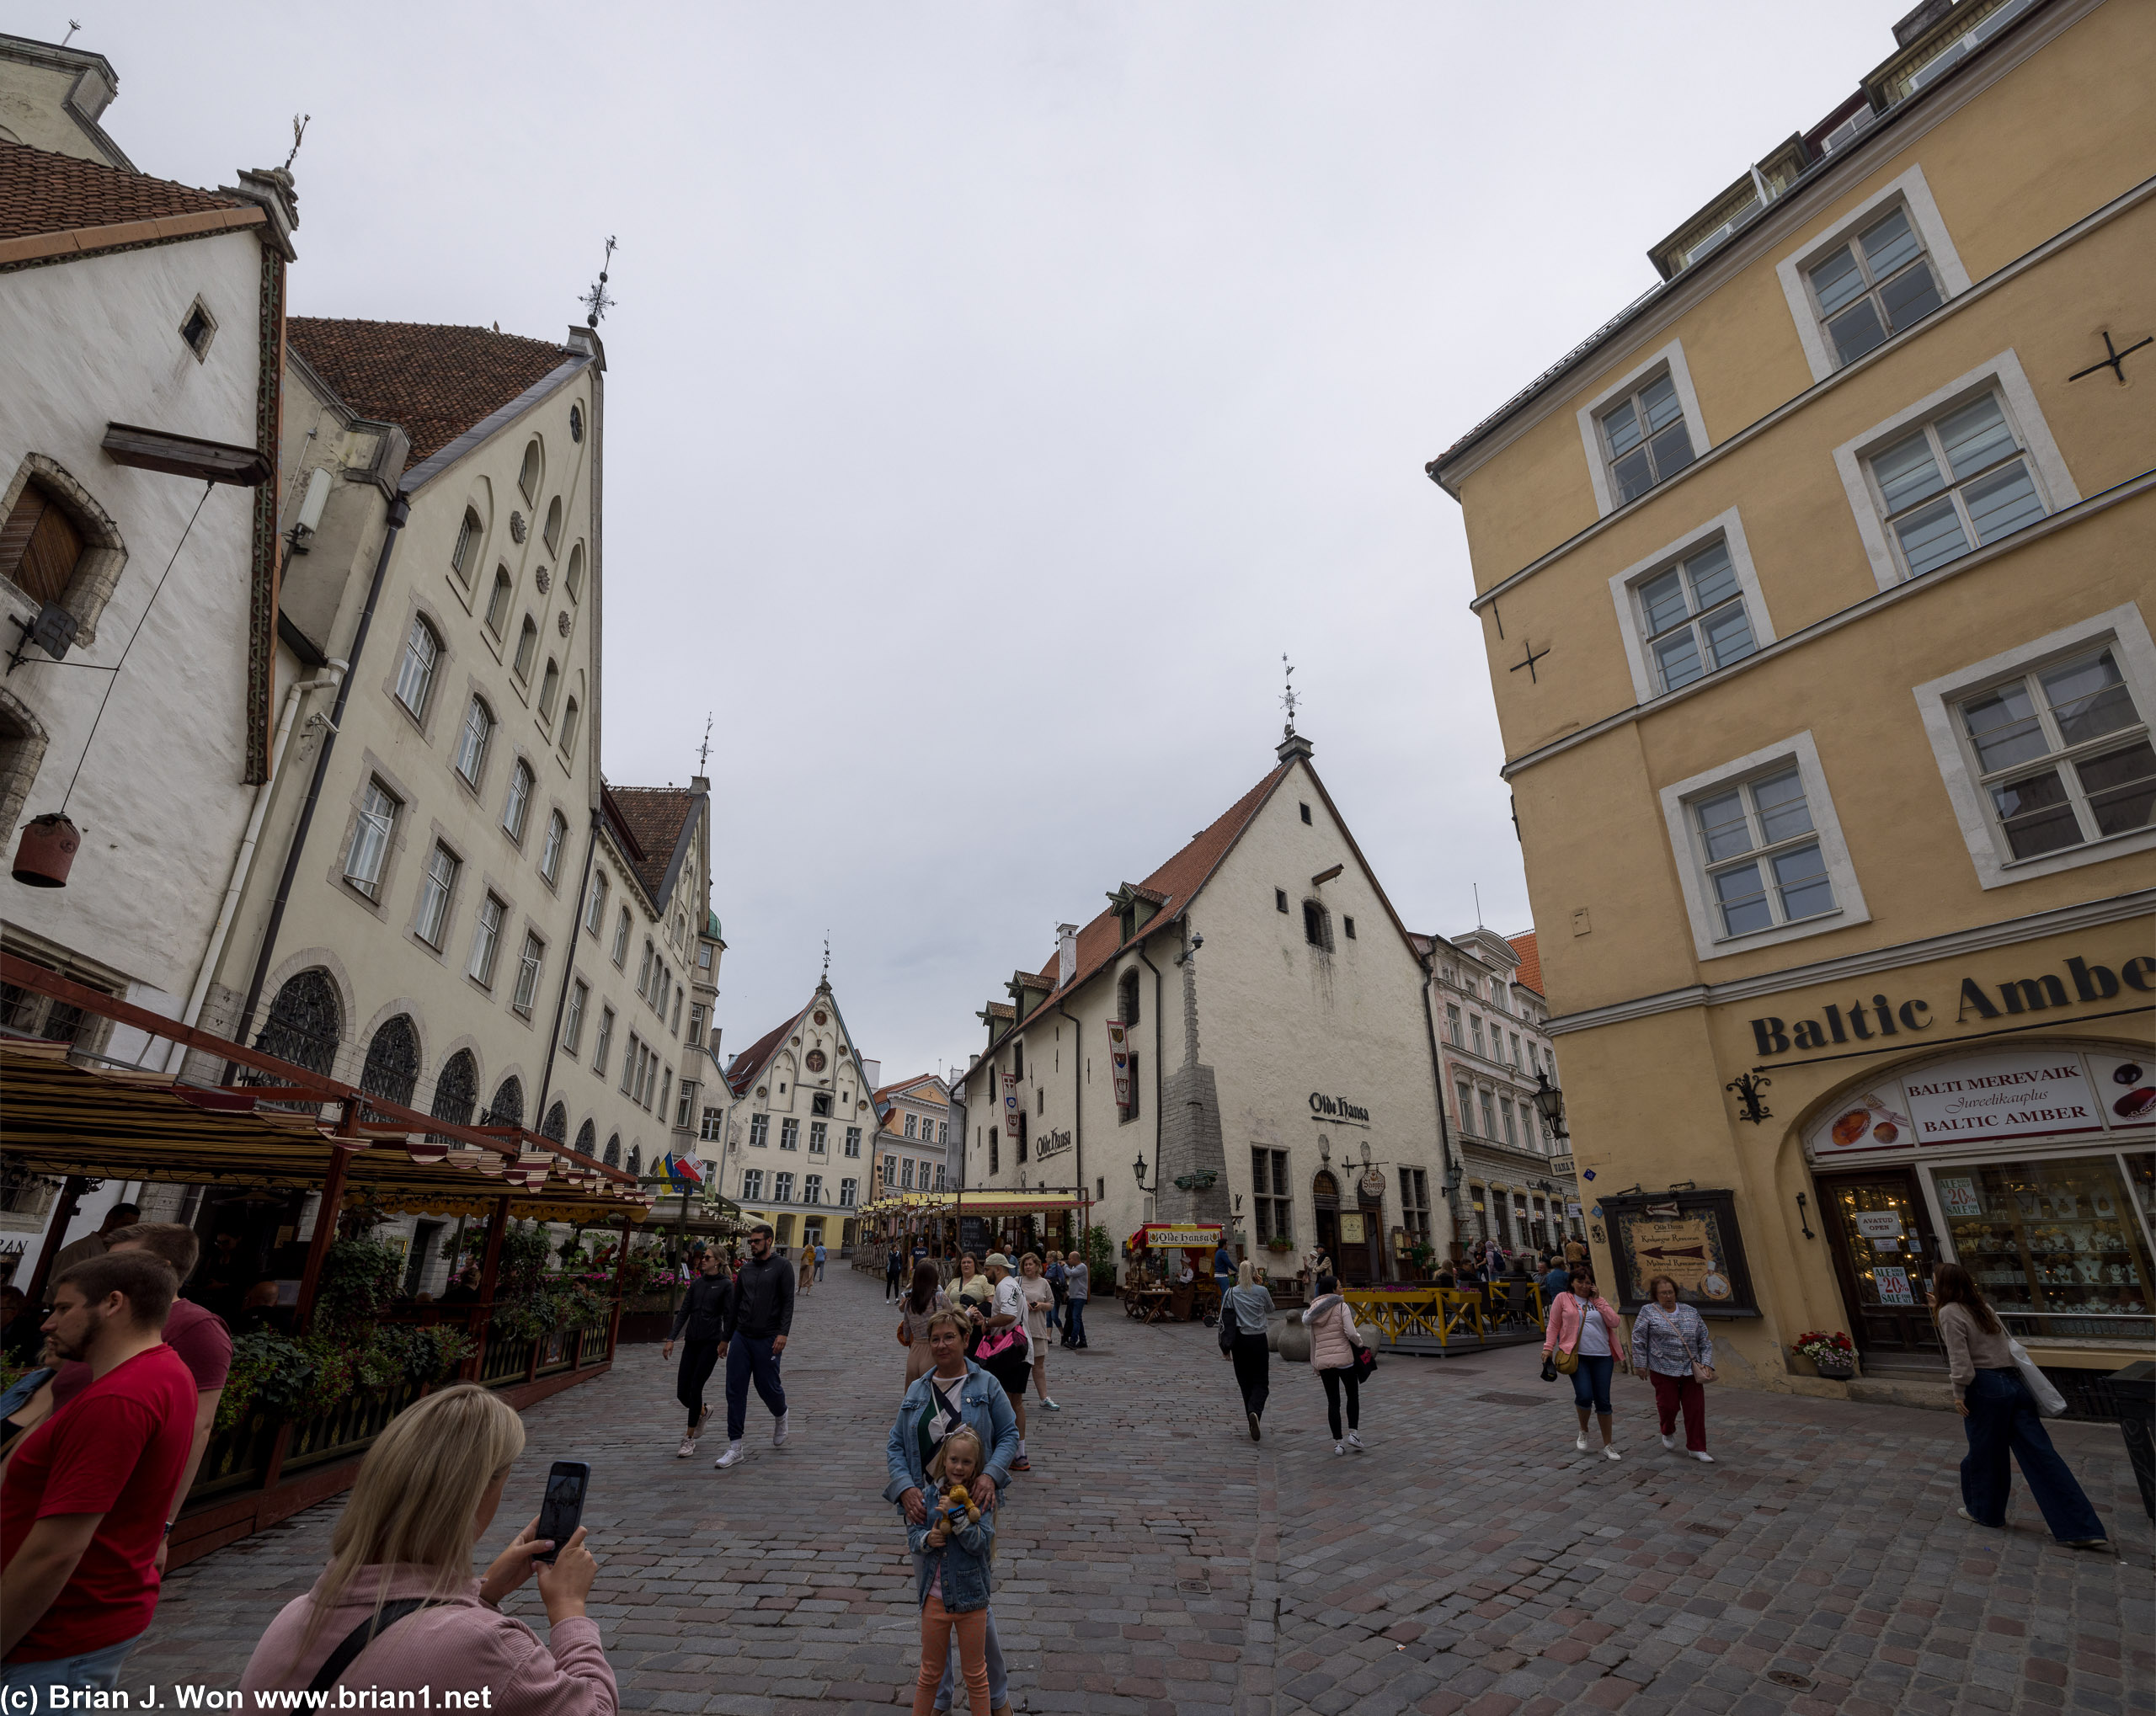 Old town Tallinn.